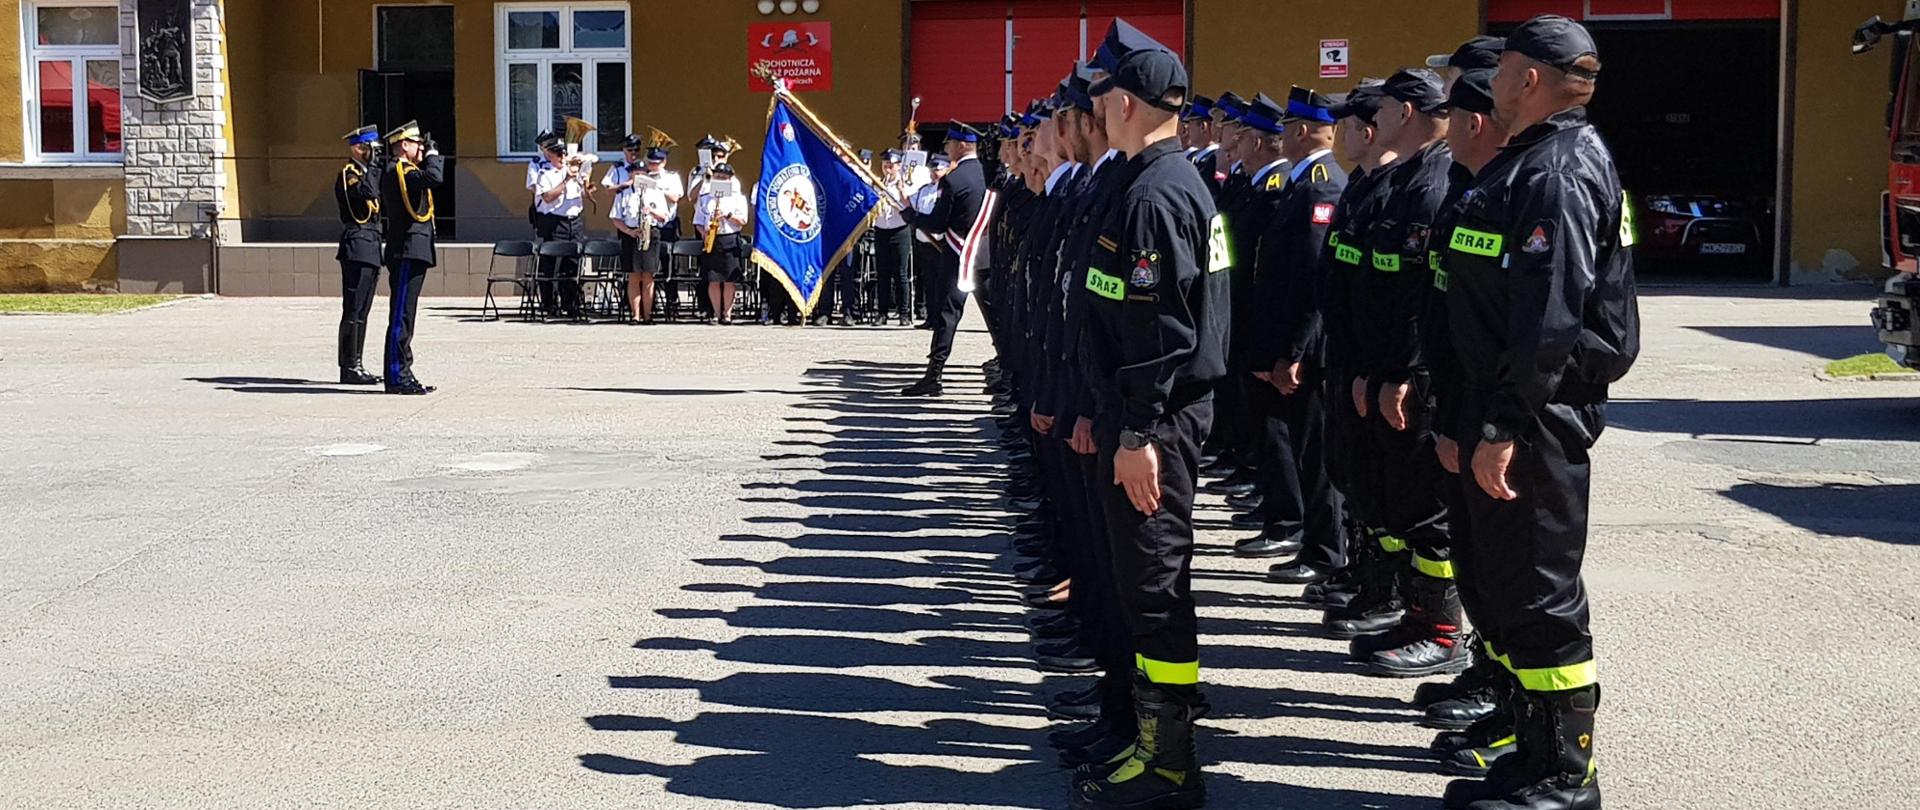 strażacy na placu stoją w dwuszeregu, w tle orkiestra dęta, przed strażakami komendant z dowódcą uroczystości salutują sztandarowi